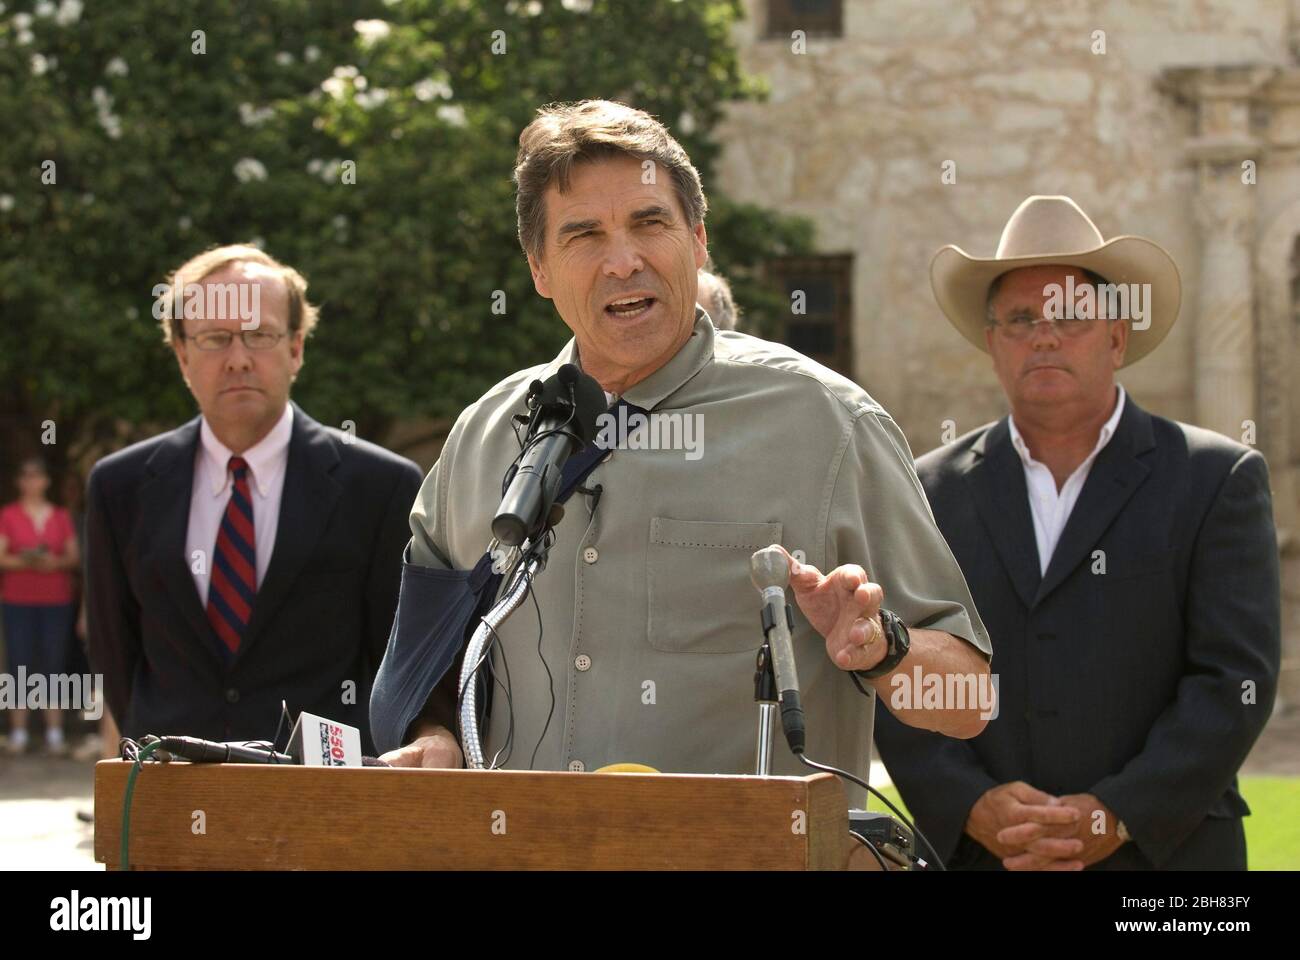 San Antonio, Texas, USA, Juni 15 2009: Der Gouverneur von Texas, Rick Perry, spricht vor dem Alamo mit informeller Kleidung und einem rechten Arm in einer Schlinge, nachdem er beim Fahrradfahren einen gebrochenen Kragenknochen erlitten hat. ©Marjorie Kamys Cotera/Bob Daemmrich Photography Stockfoto